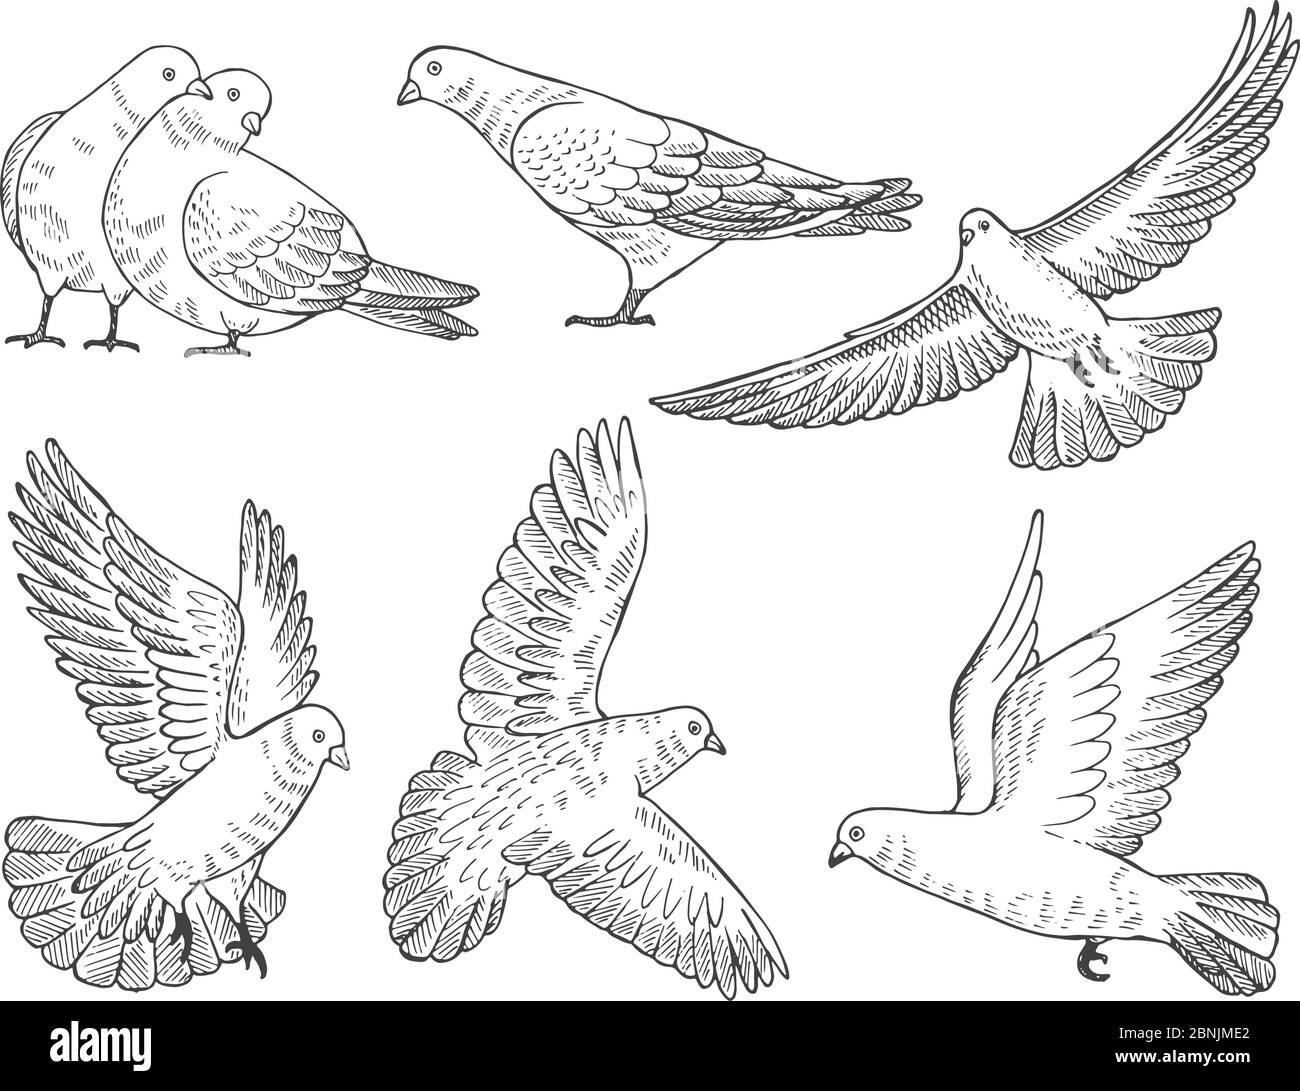 Handgezeichnete Bilder von Tauben in verschiedenen Posen Stock Vektor